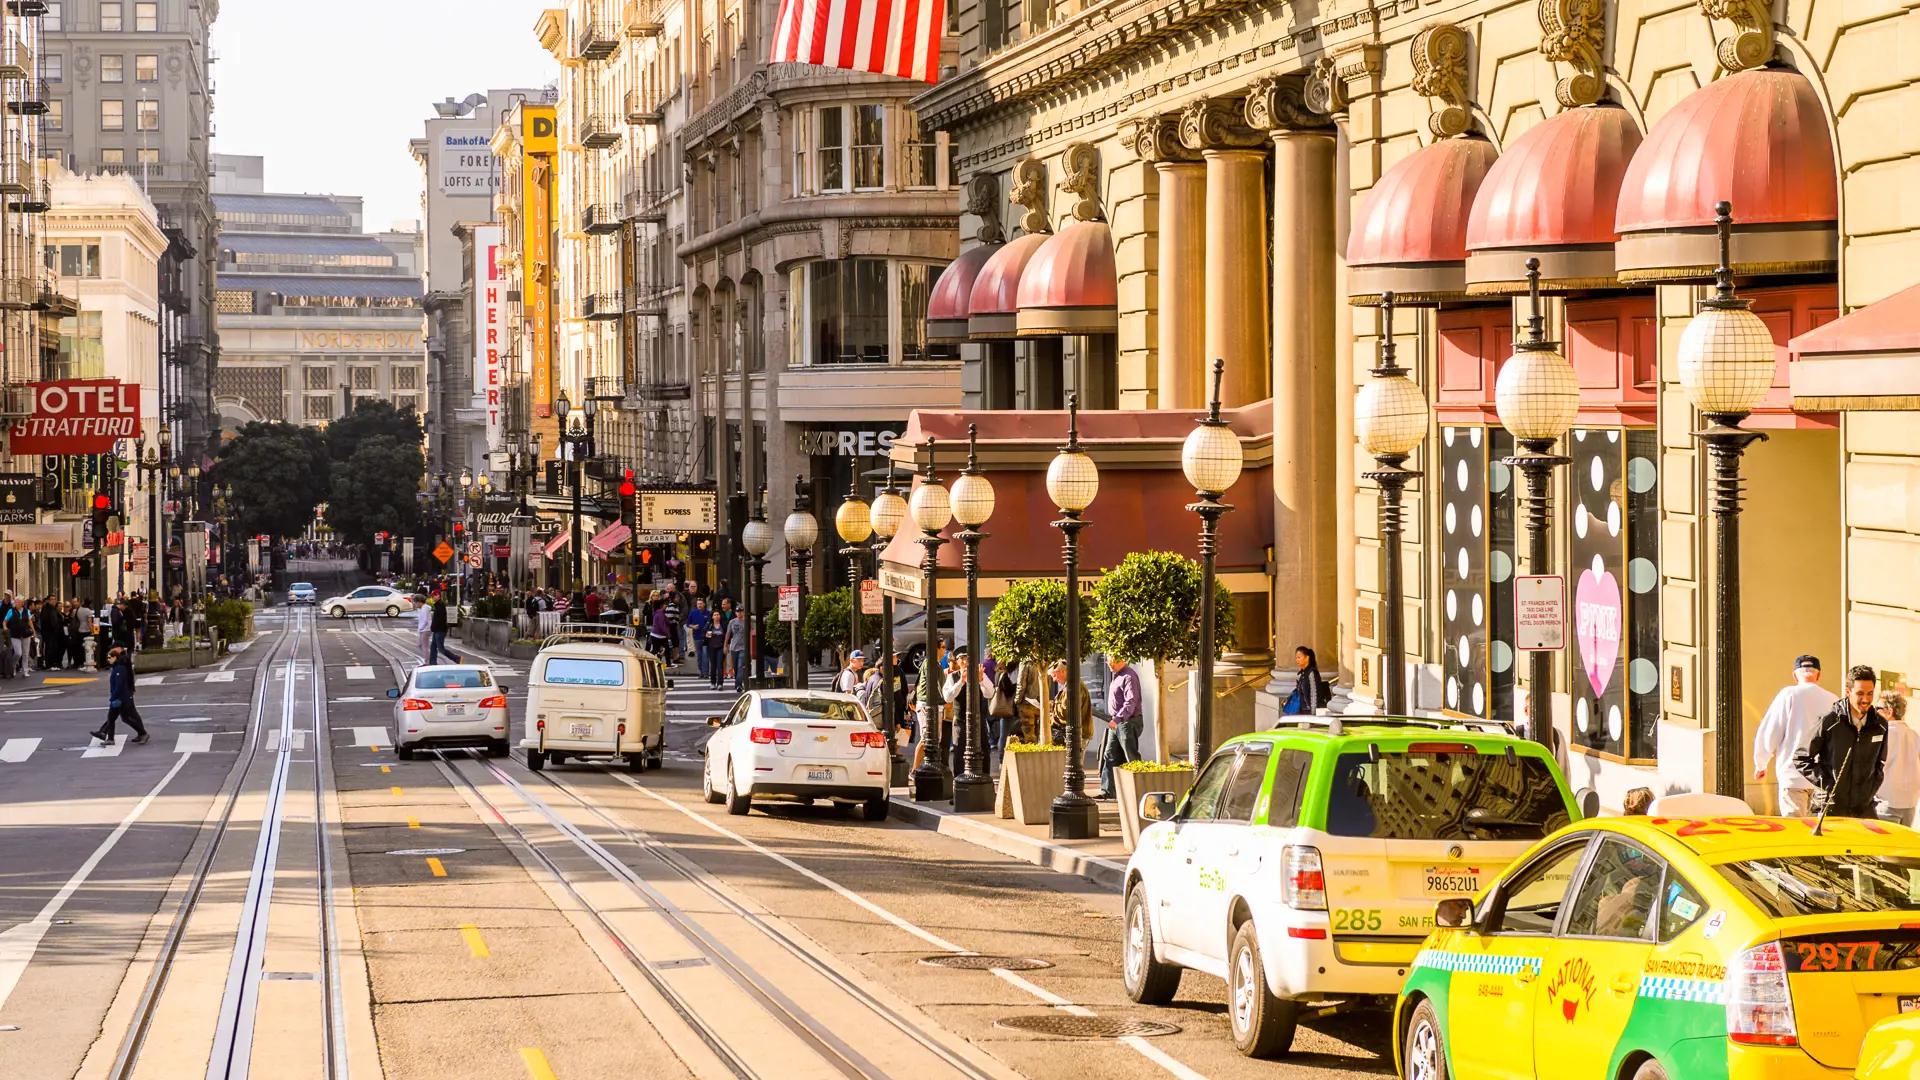 SAN FRANCISCO - byen er en smeltedigel af kulturelle retninger og etniciteter hvilket opleves bedst til fods rundt i gaderne, Check Point Travel